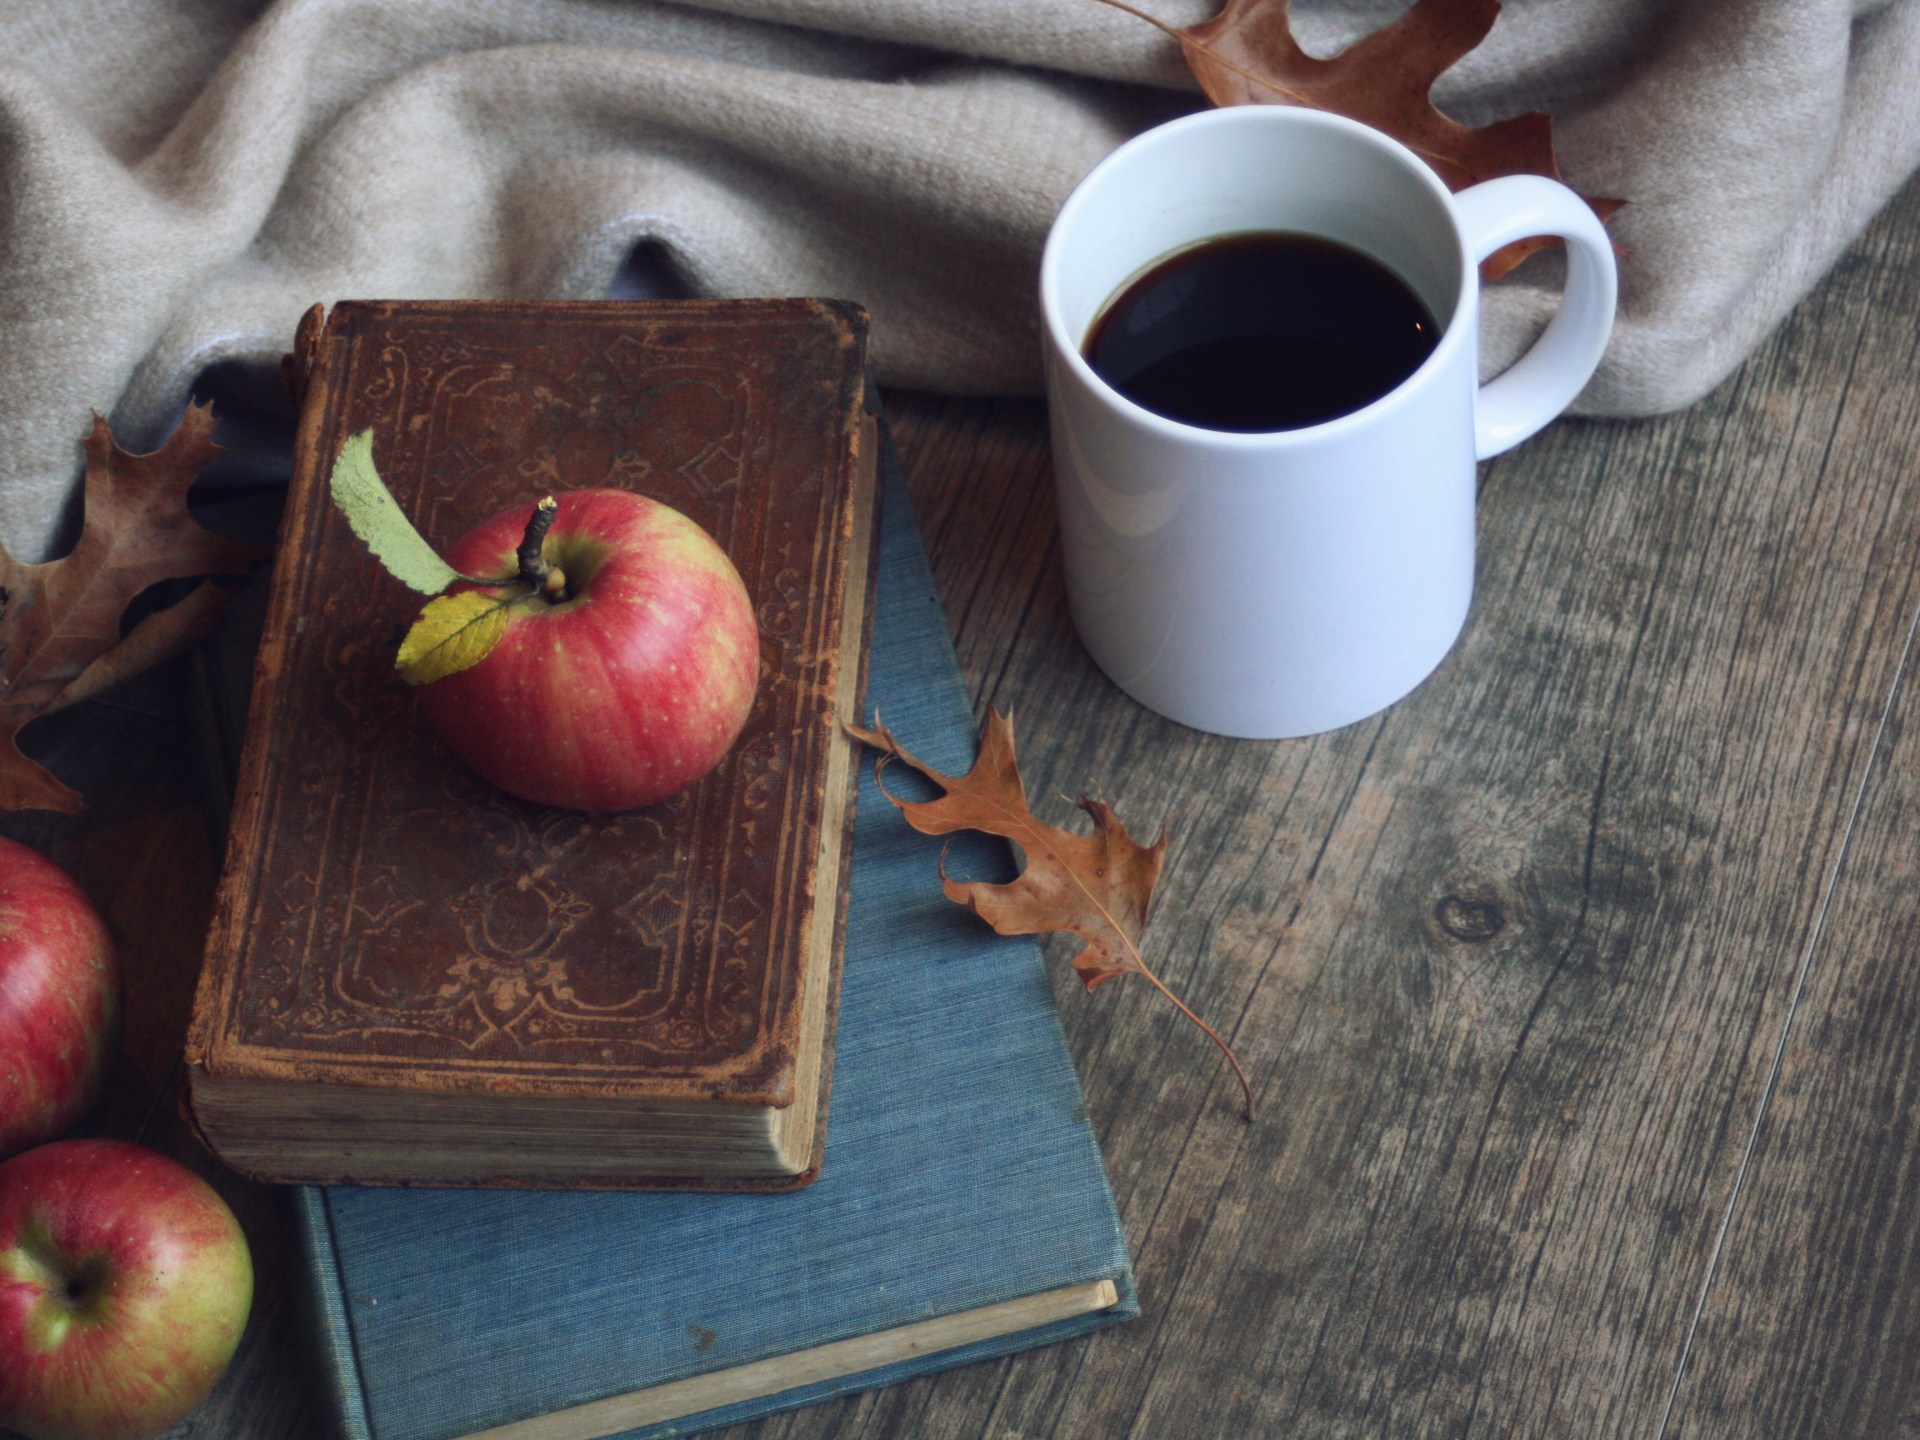 التفاح في الصباح أفضل من القهوة للنشاط والحيوية | صحة | الجزيرة نت